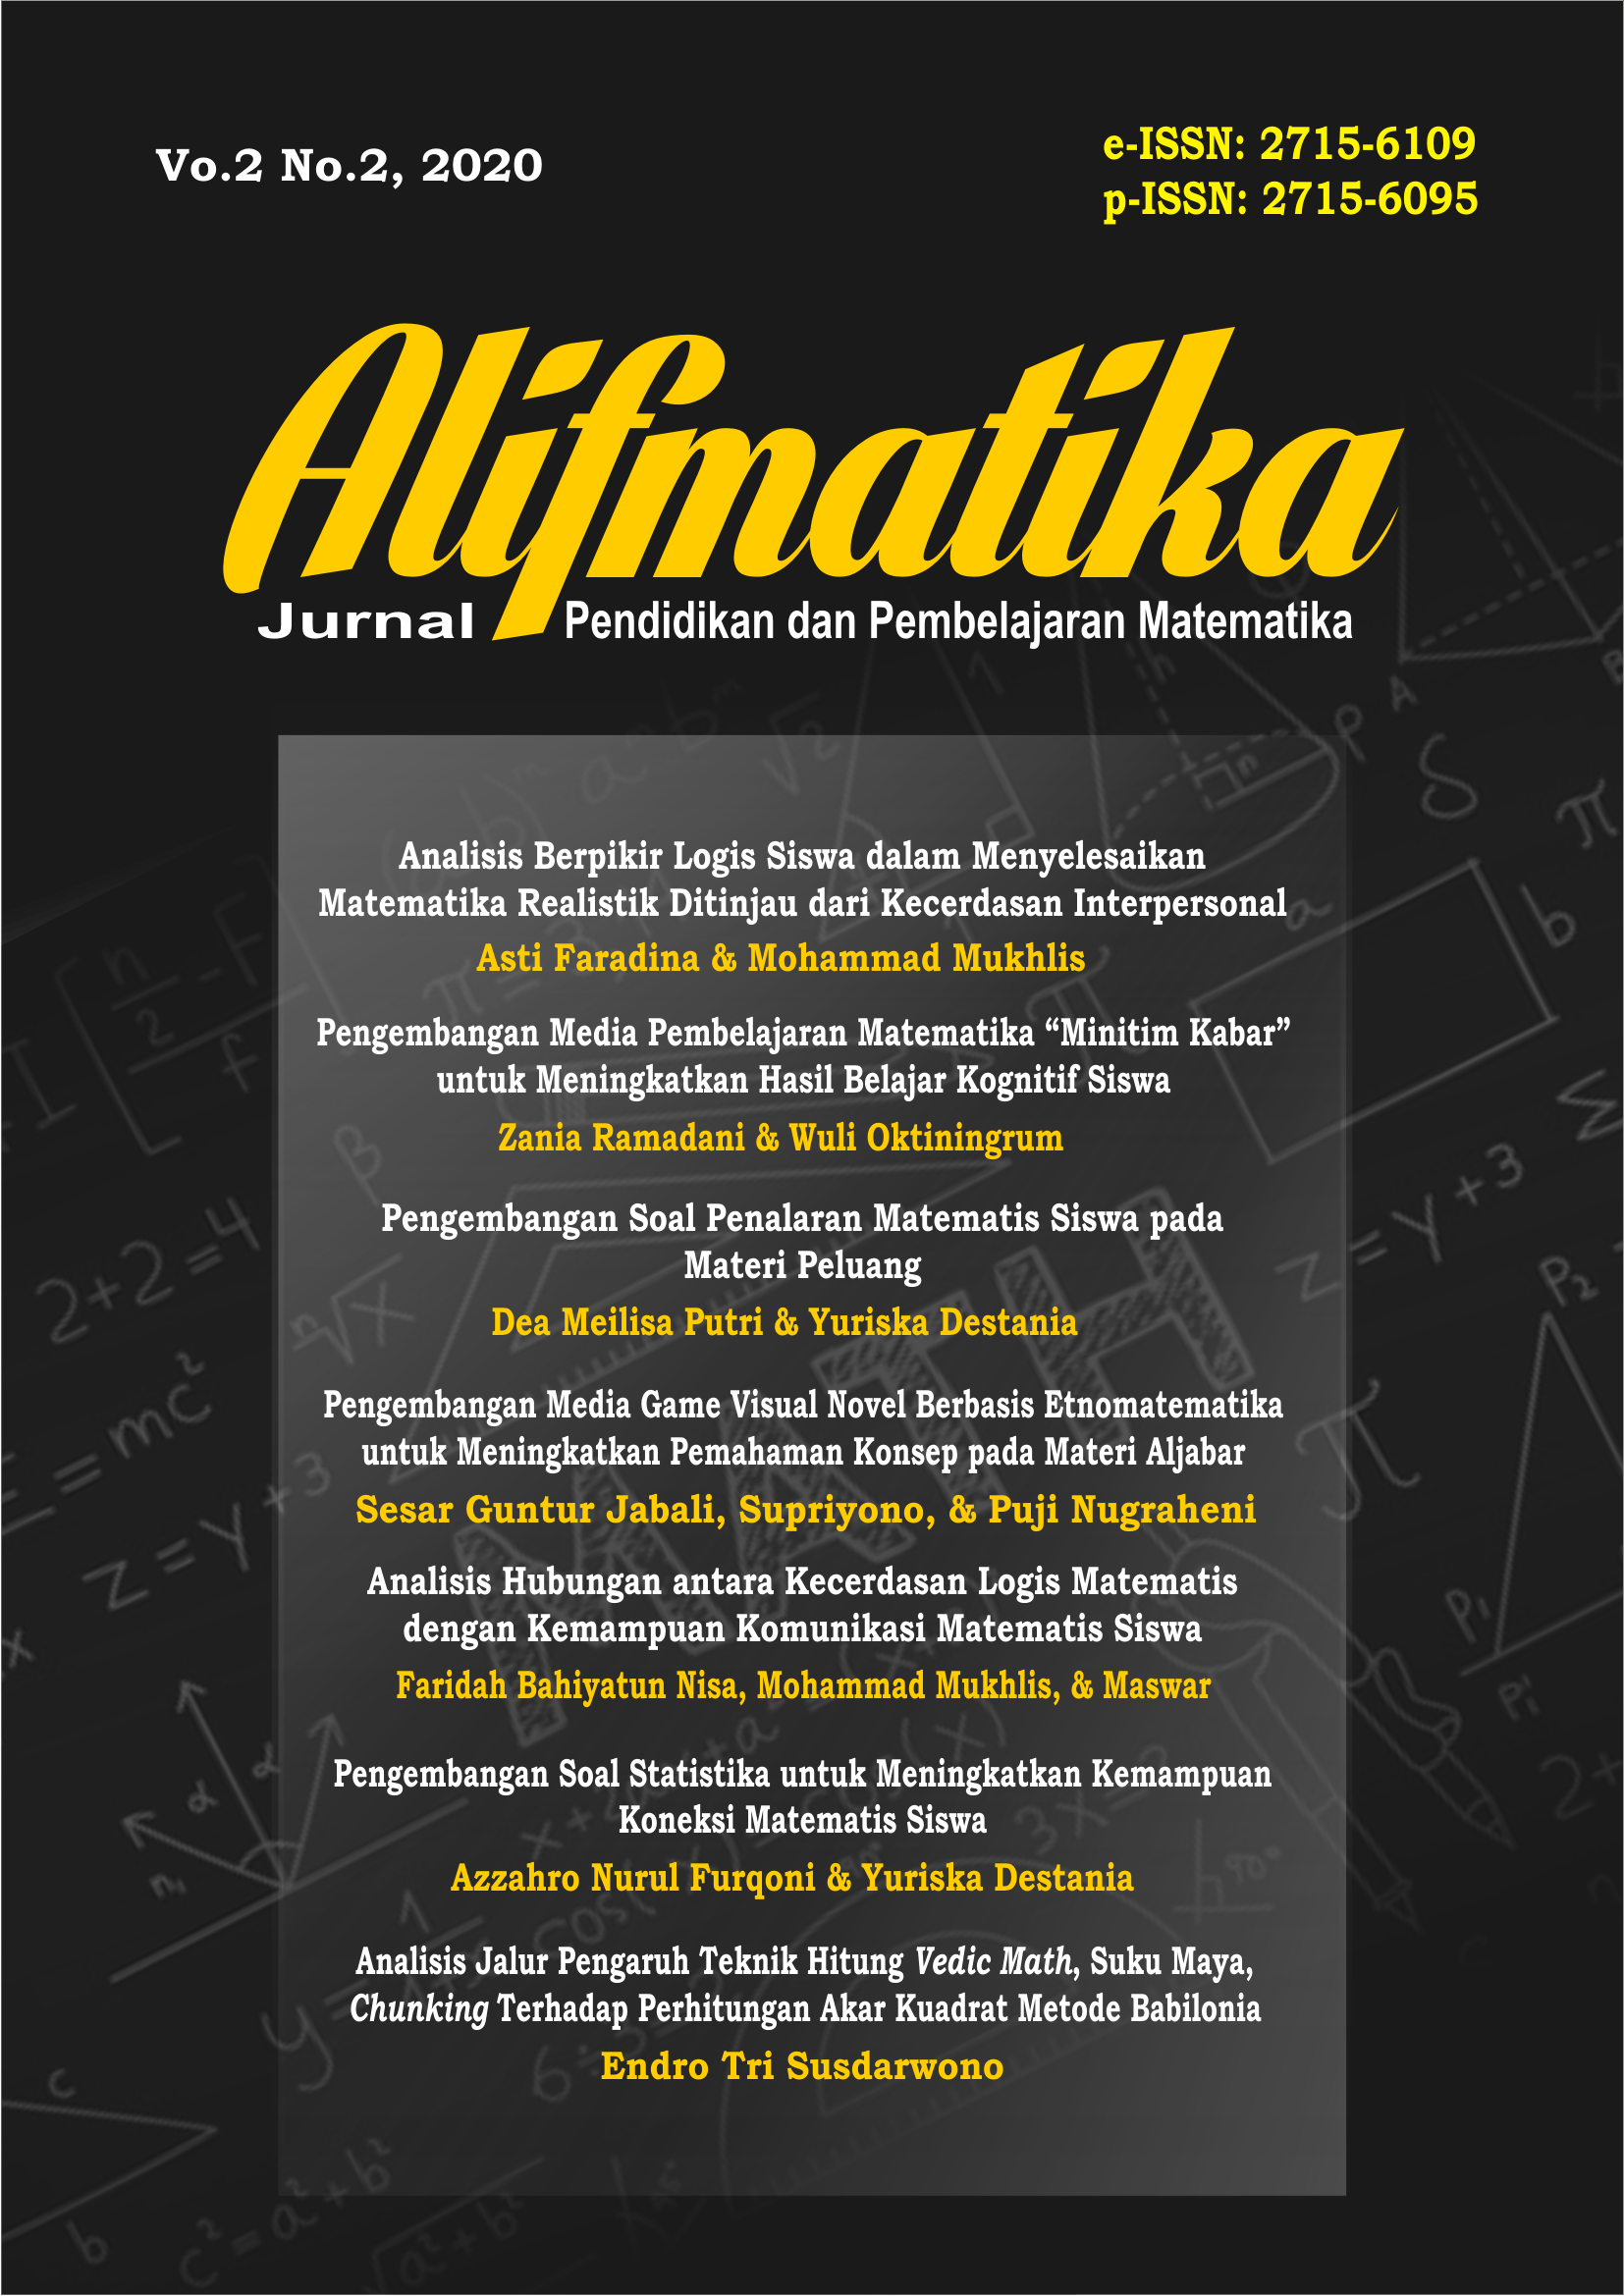 Alifmatika: Jurnal Pendidikan dan Pembelajaran Matematika